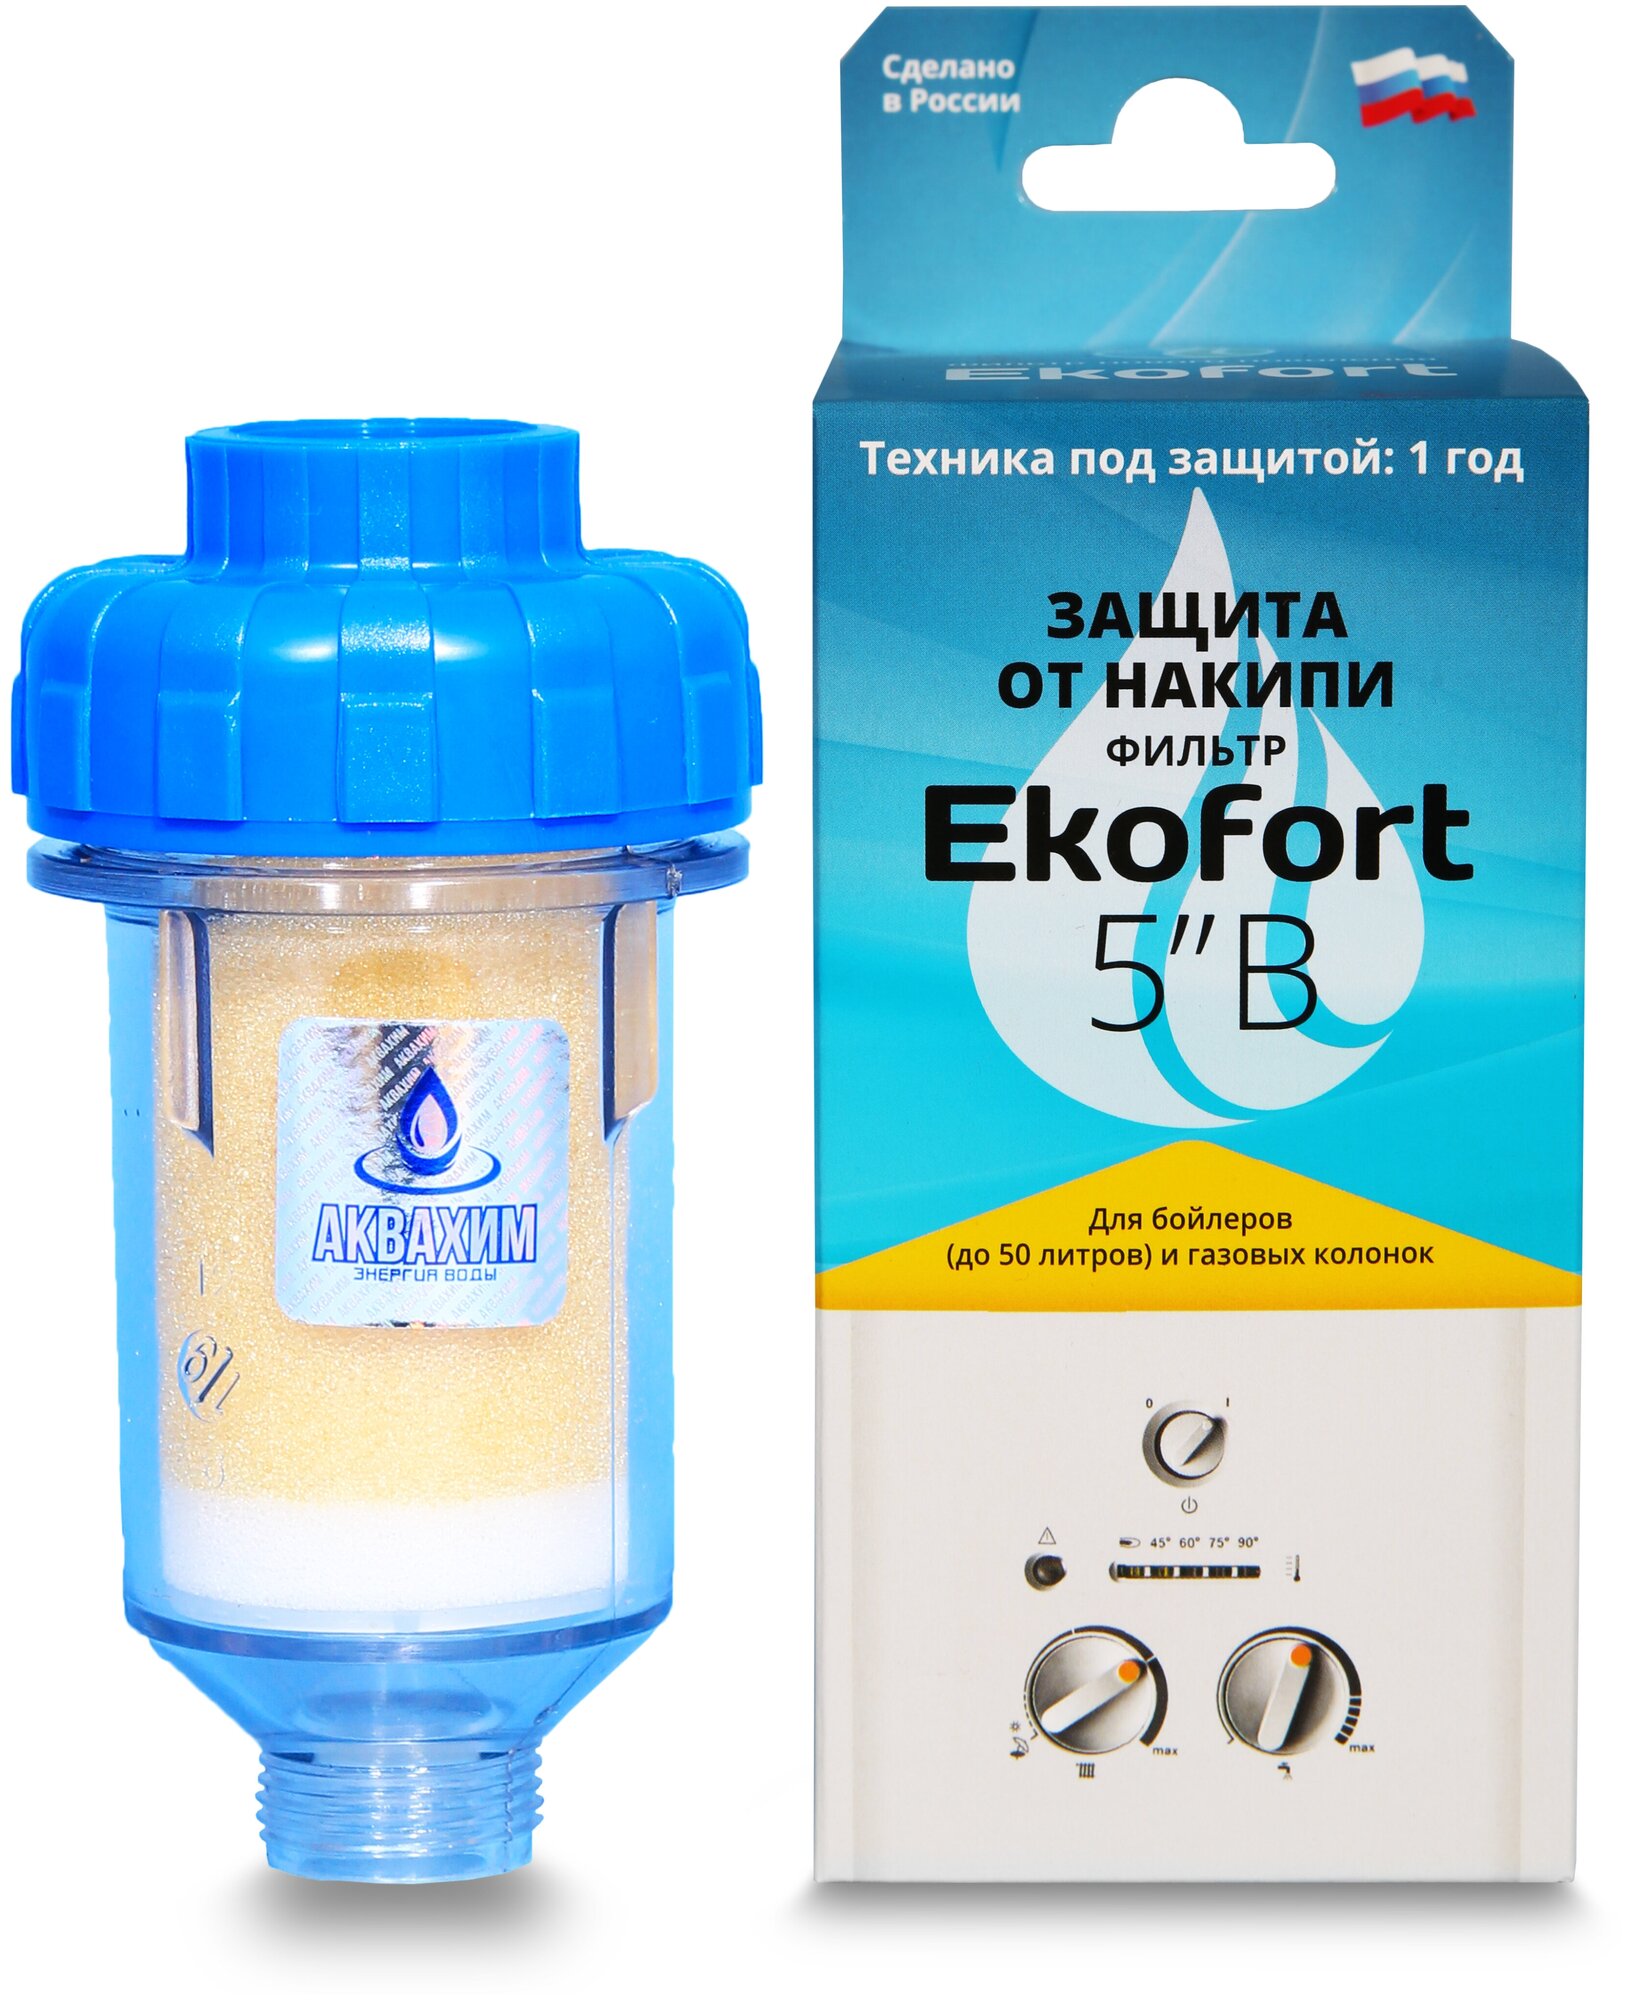 Фильтр Ekofort 5" B (1/2") для защиты от накипи газовых и электрических водонагревателей бойлеров